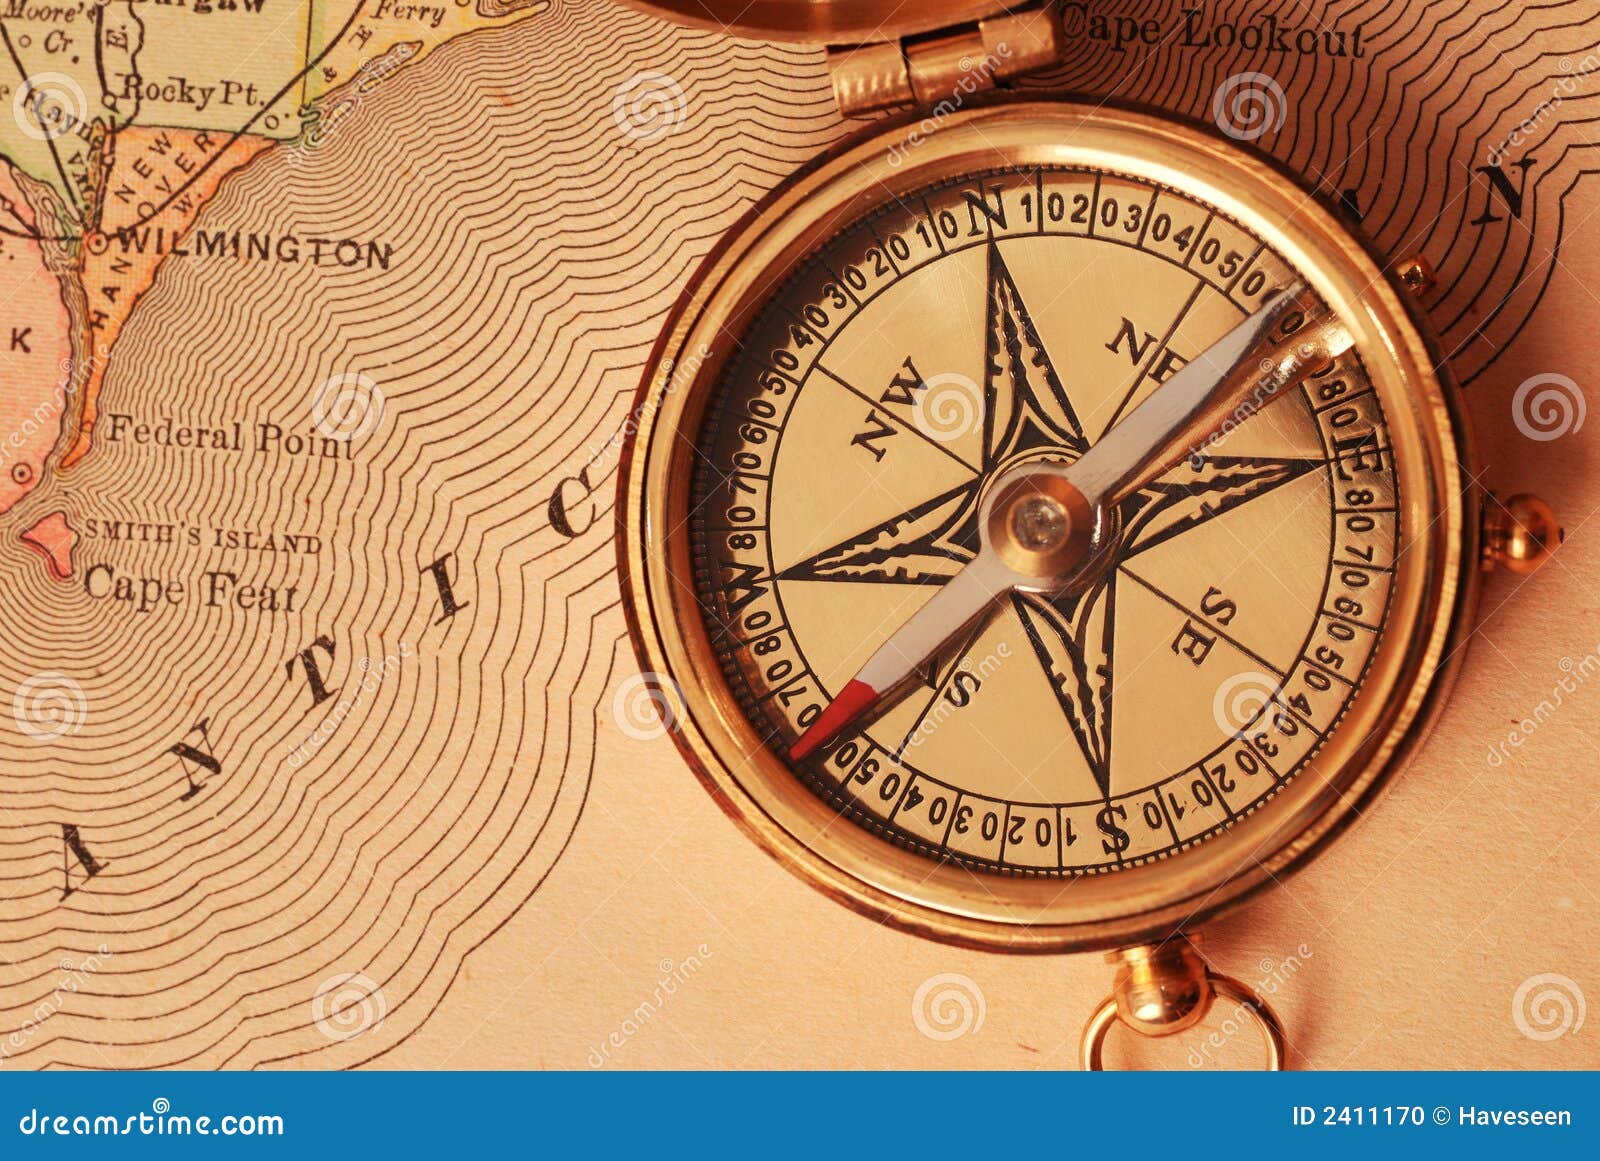 Компас и его открытие. Компос. Путешественник с компасом. Географический компас. Компас на карте.